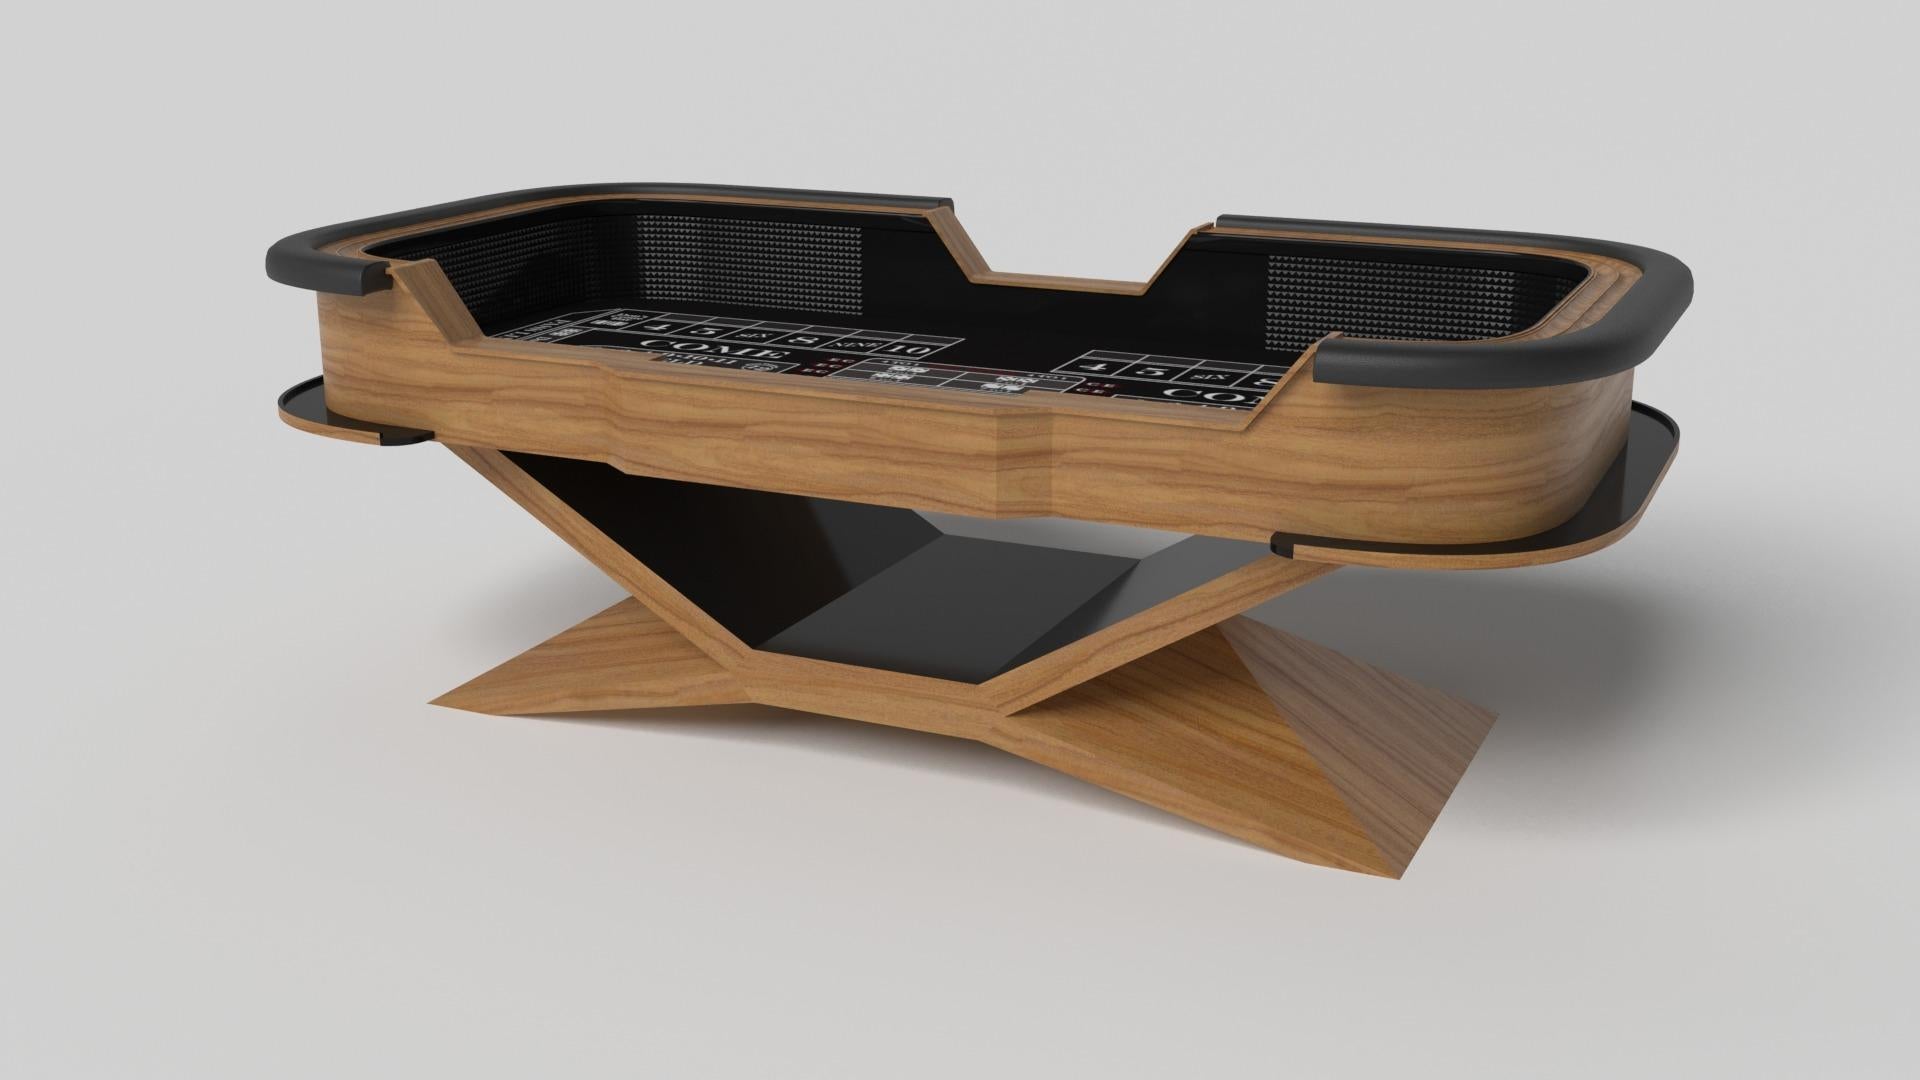 Der Craps-Tisch Kors aus verchromtem Metall ist ein hervorragendes Beispiel für kontrastierende geometrische Formen. Dieser Tisch verfügt über ein kantiges Untergestell, das die Schönheit des negativen Raums in der Vorderansicht hervorhebt. In der